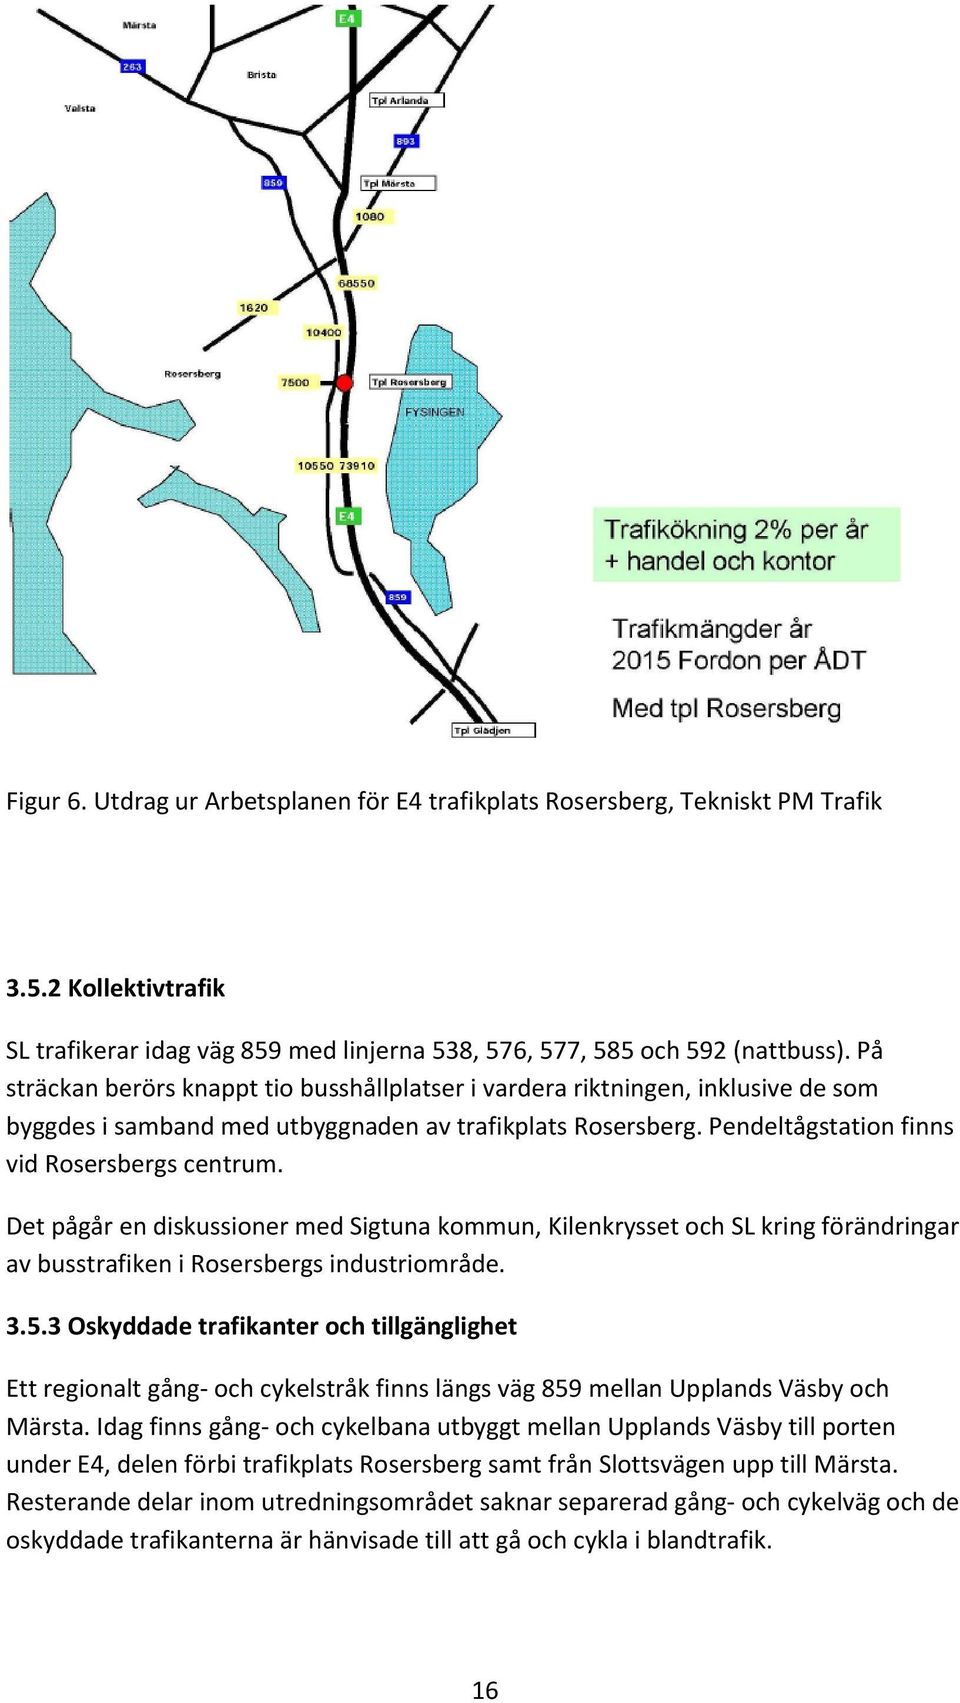 Det pågår en diskussioner med Sigtuna kommun, Kilenkrysset och SL kring förändringar av busstrafiken i Rosersbergs industriområde. 3.5.